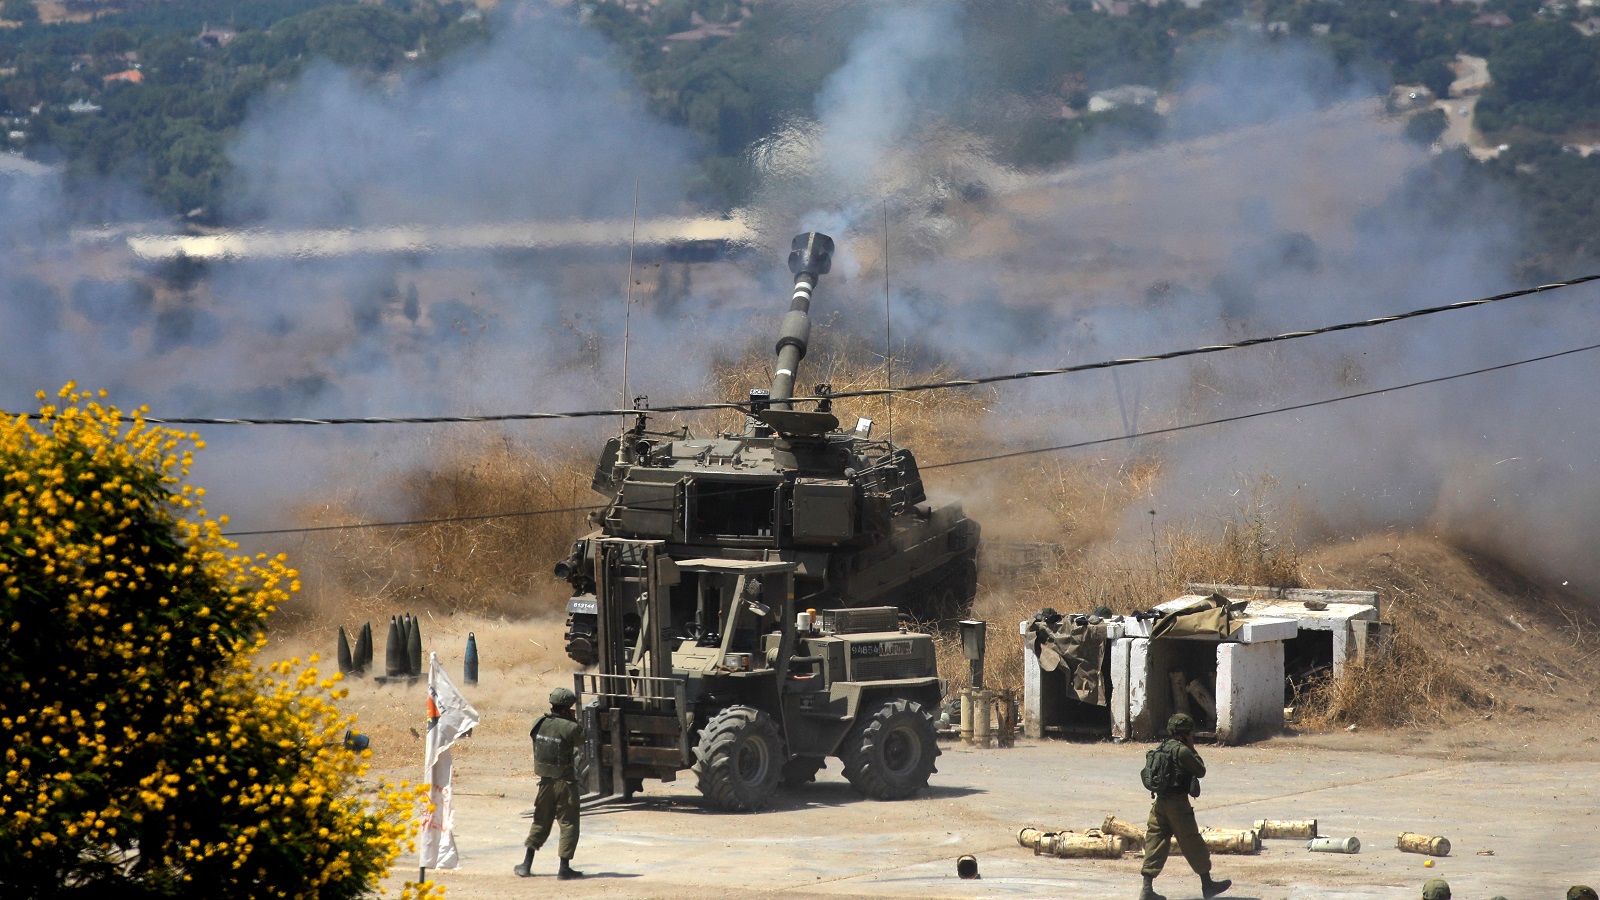 اتصالات مشبوهة تسبق ضربات إسرائيلية على لبنان...قصة أمّ حسين